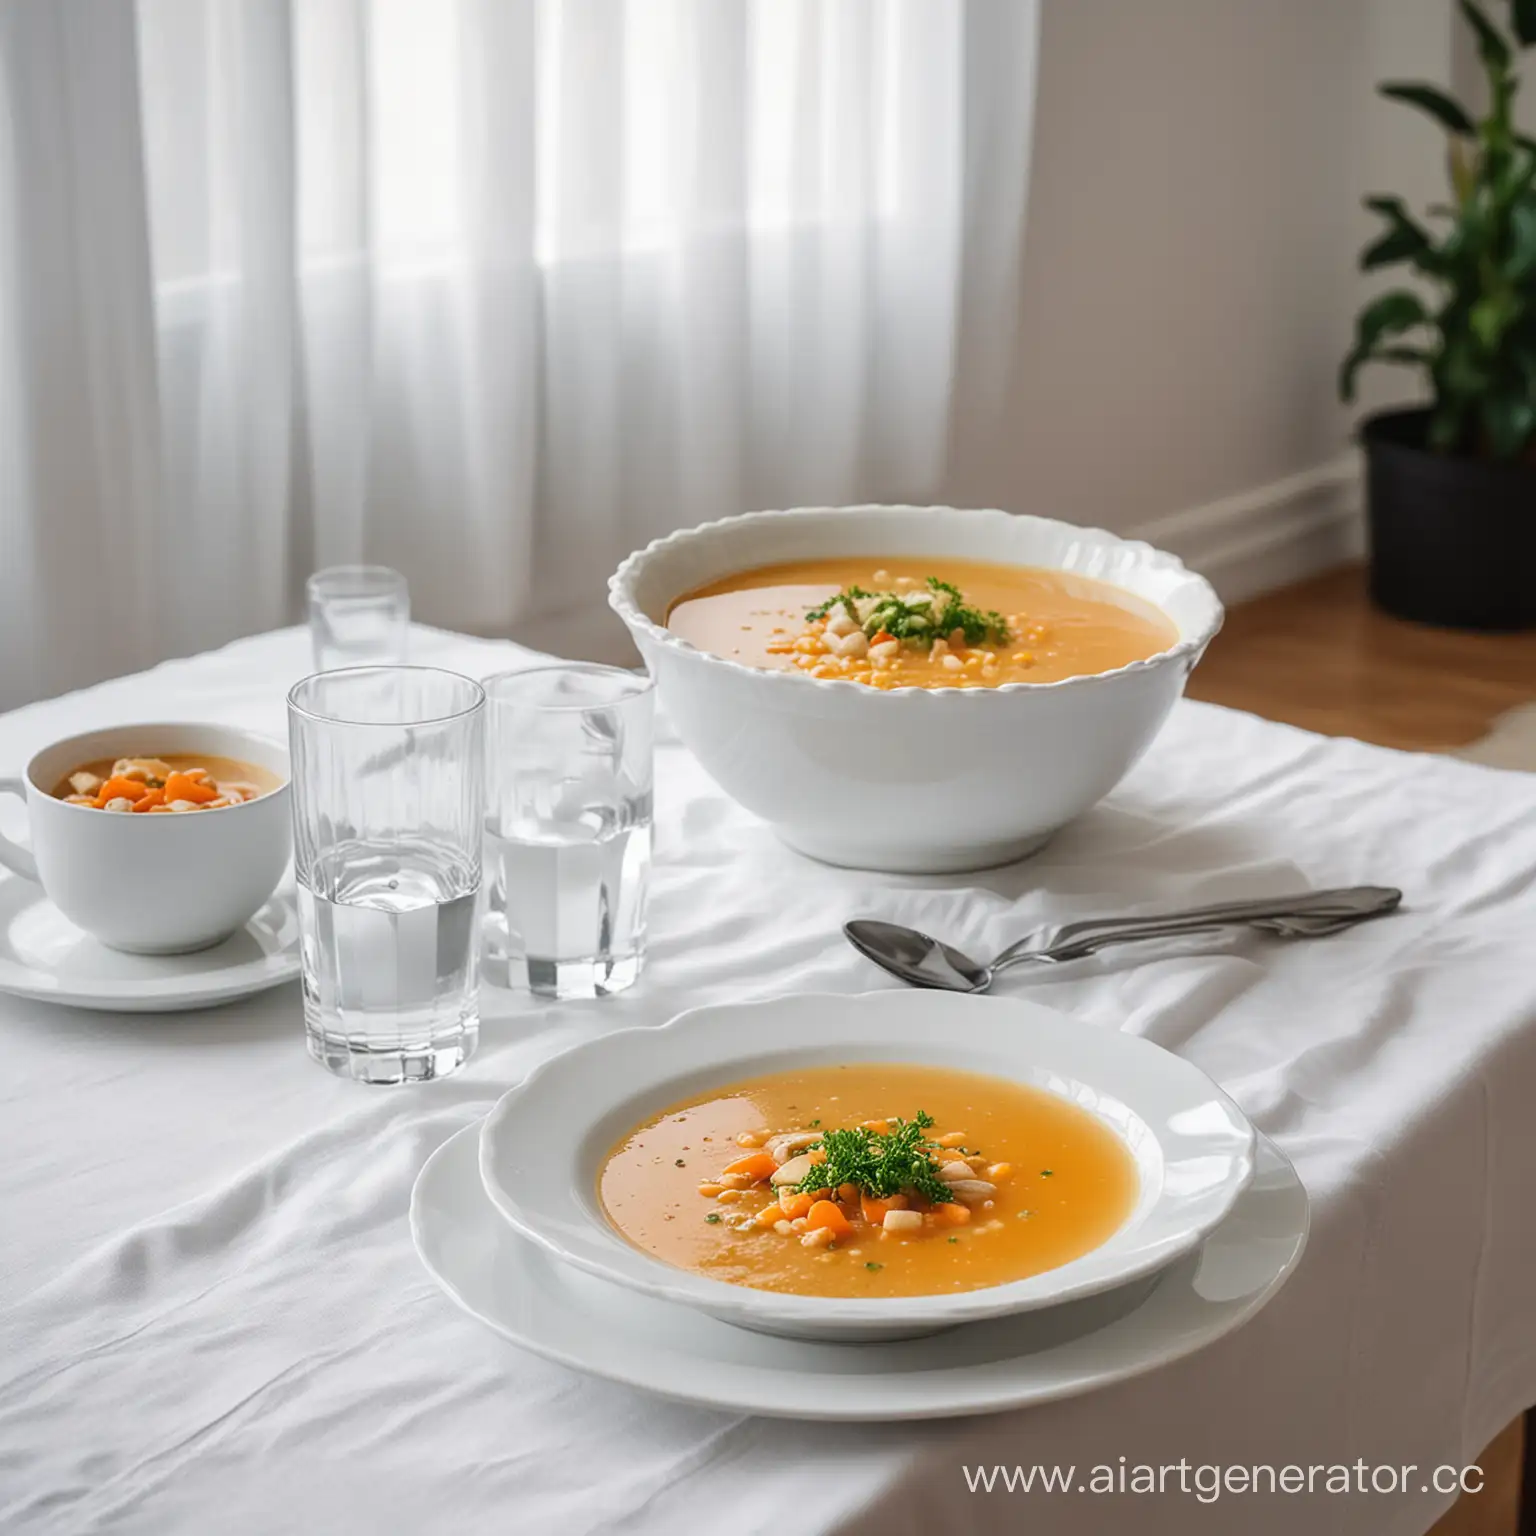 Профессиональное светлое фото: на столе белая скатерть, на ней стоит тарелка, в ней суп.  Рядом стакан с водой. На фоне современная квартира